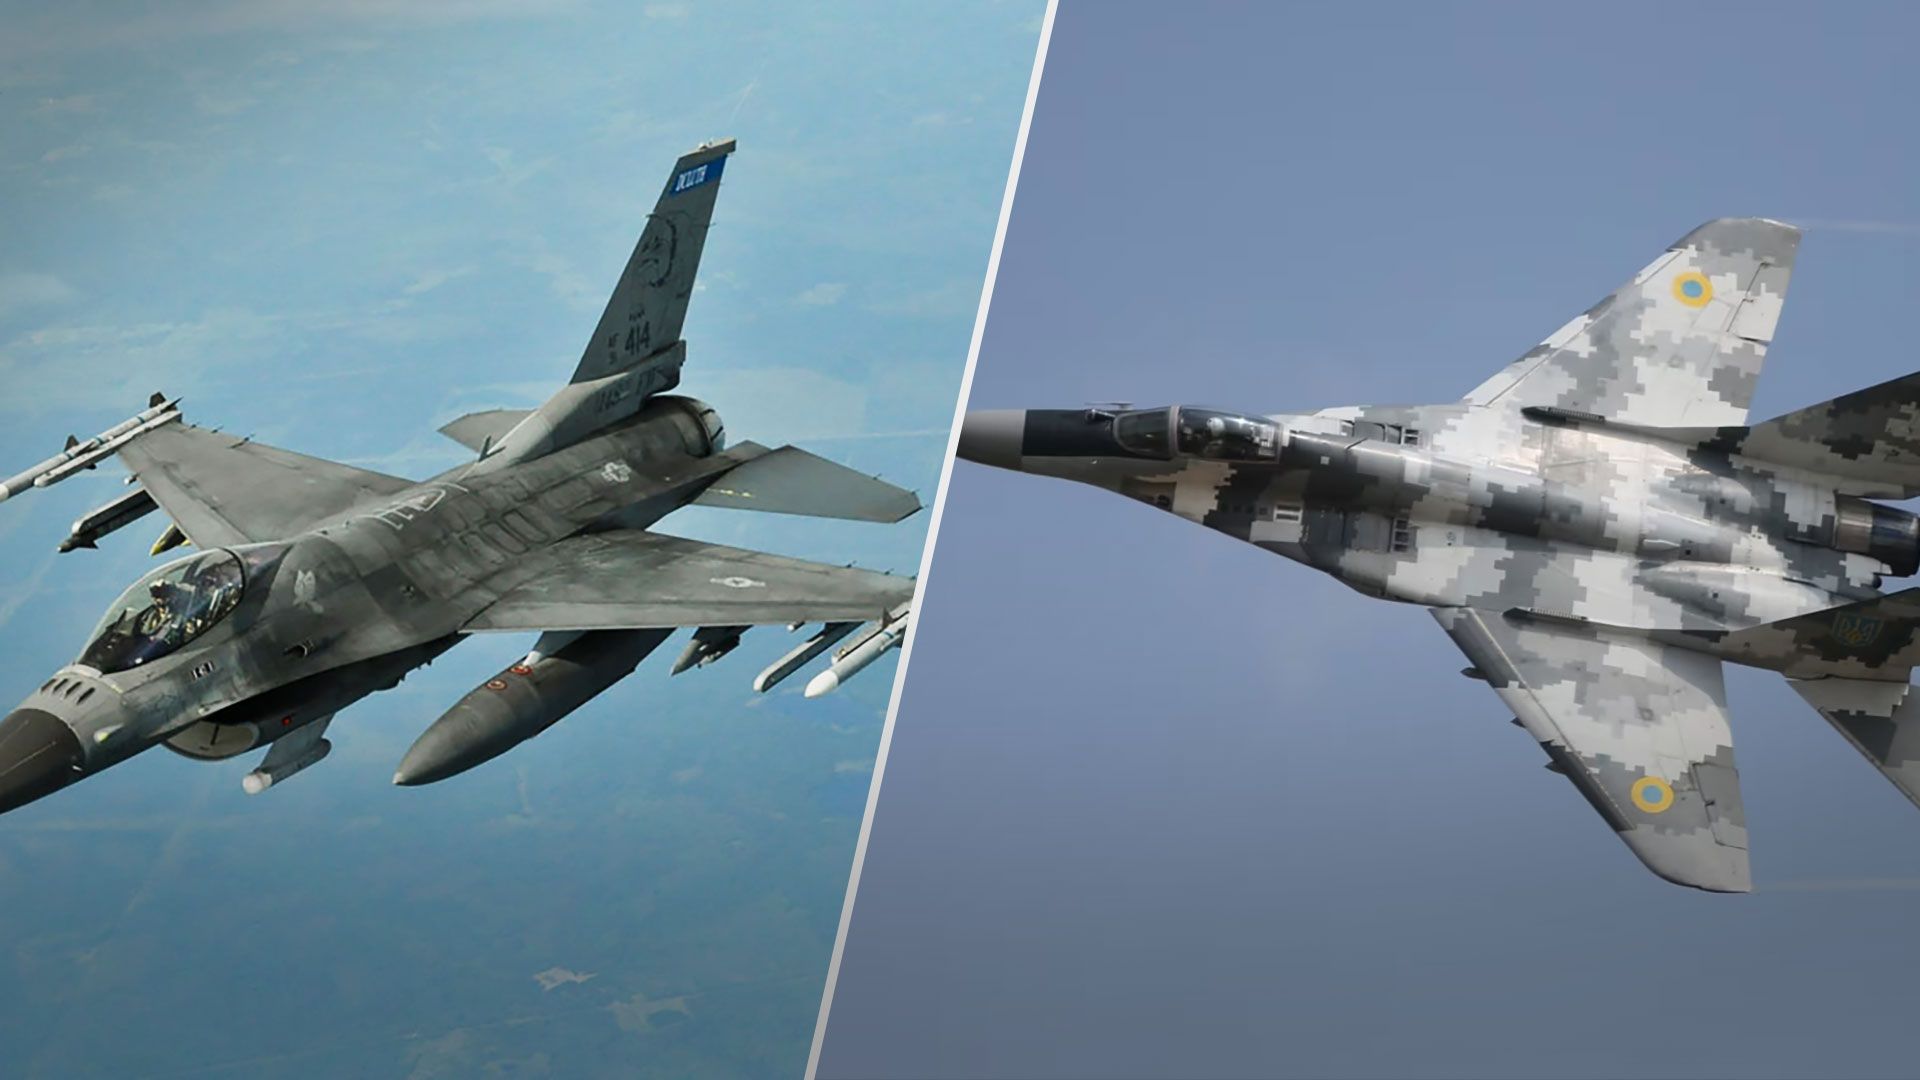 Порівняння характеристик літаків F-16 та МіГ-29 - який літак кращий F-16 чи МіГ-29 - 24 Канал